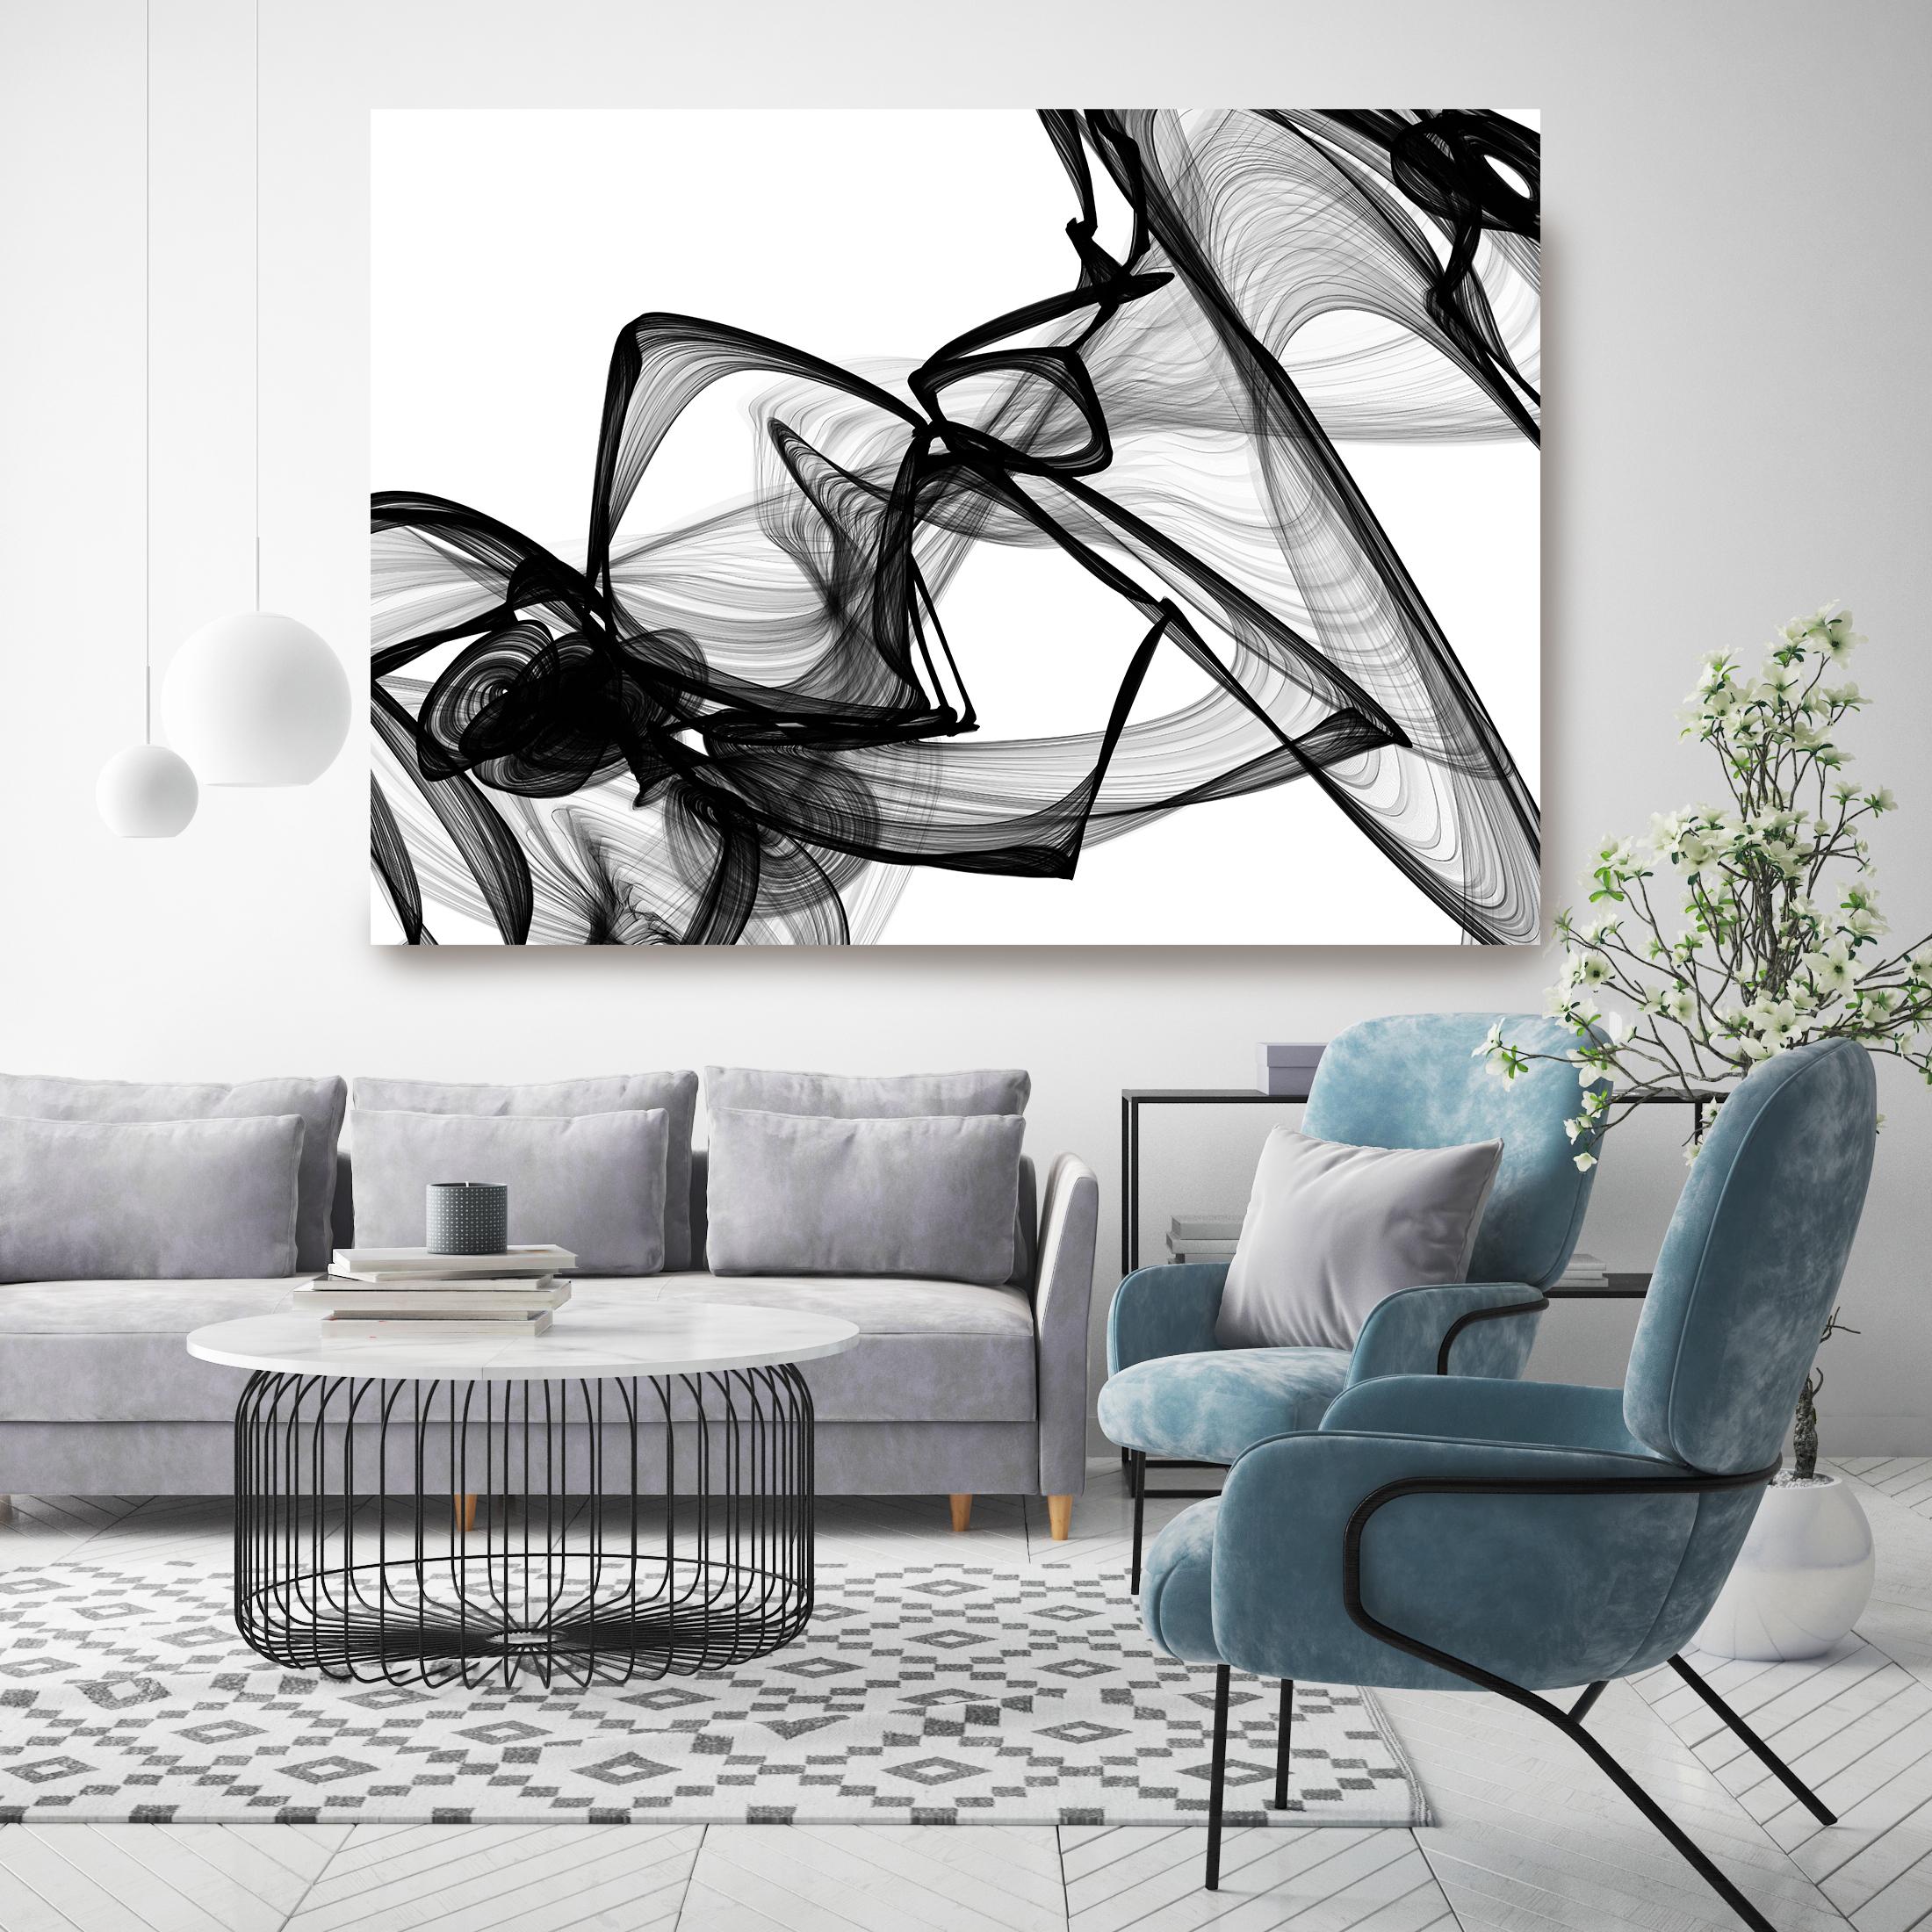 Peinture sur toile abstraite noire et blanche des nouveaux médias, « It was me, Minimalist » (Ce était moi, minimaliste) 152,4 x 117,4 cm